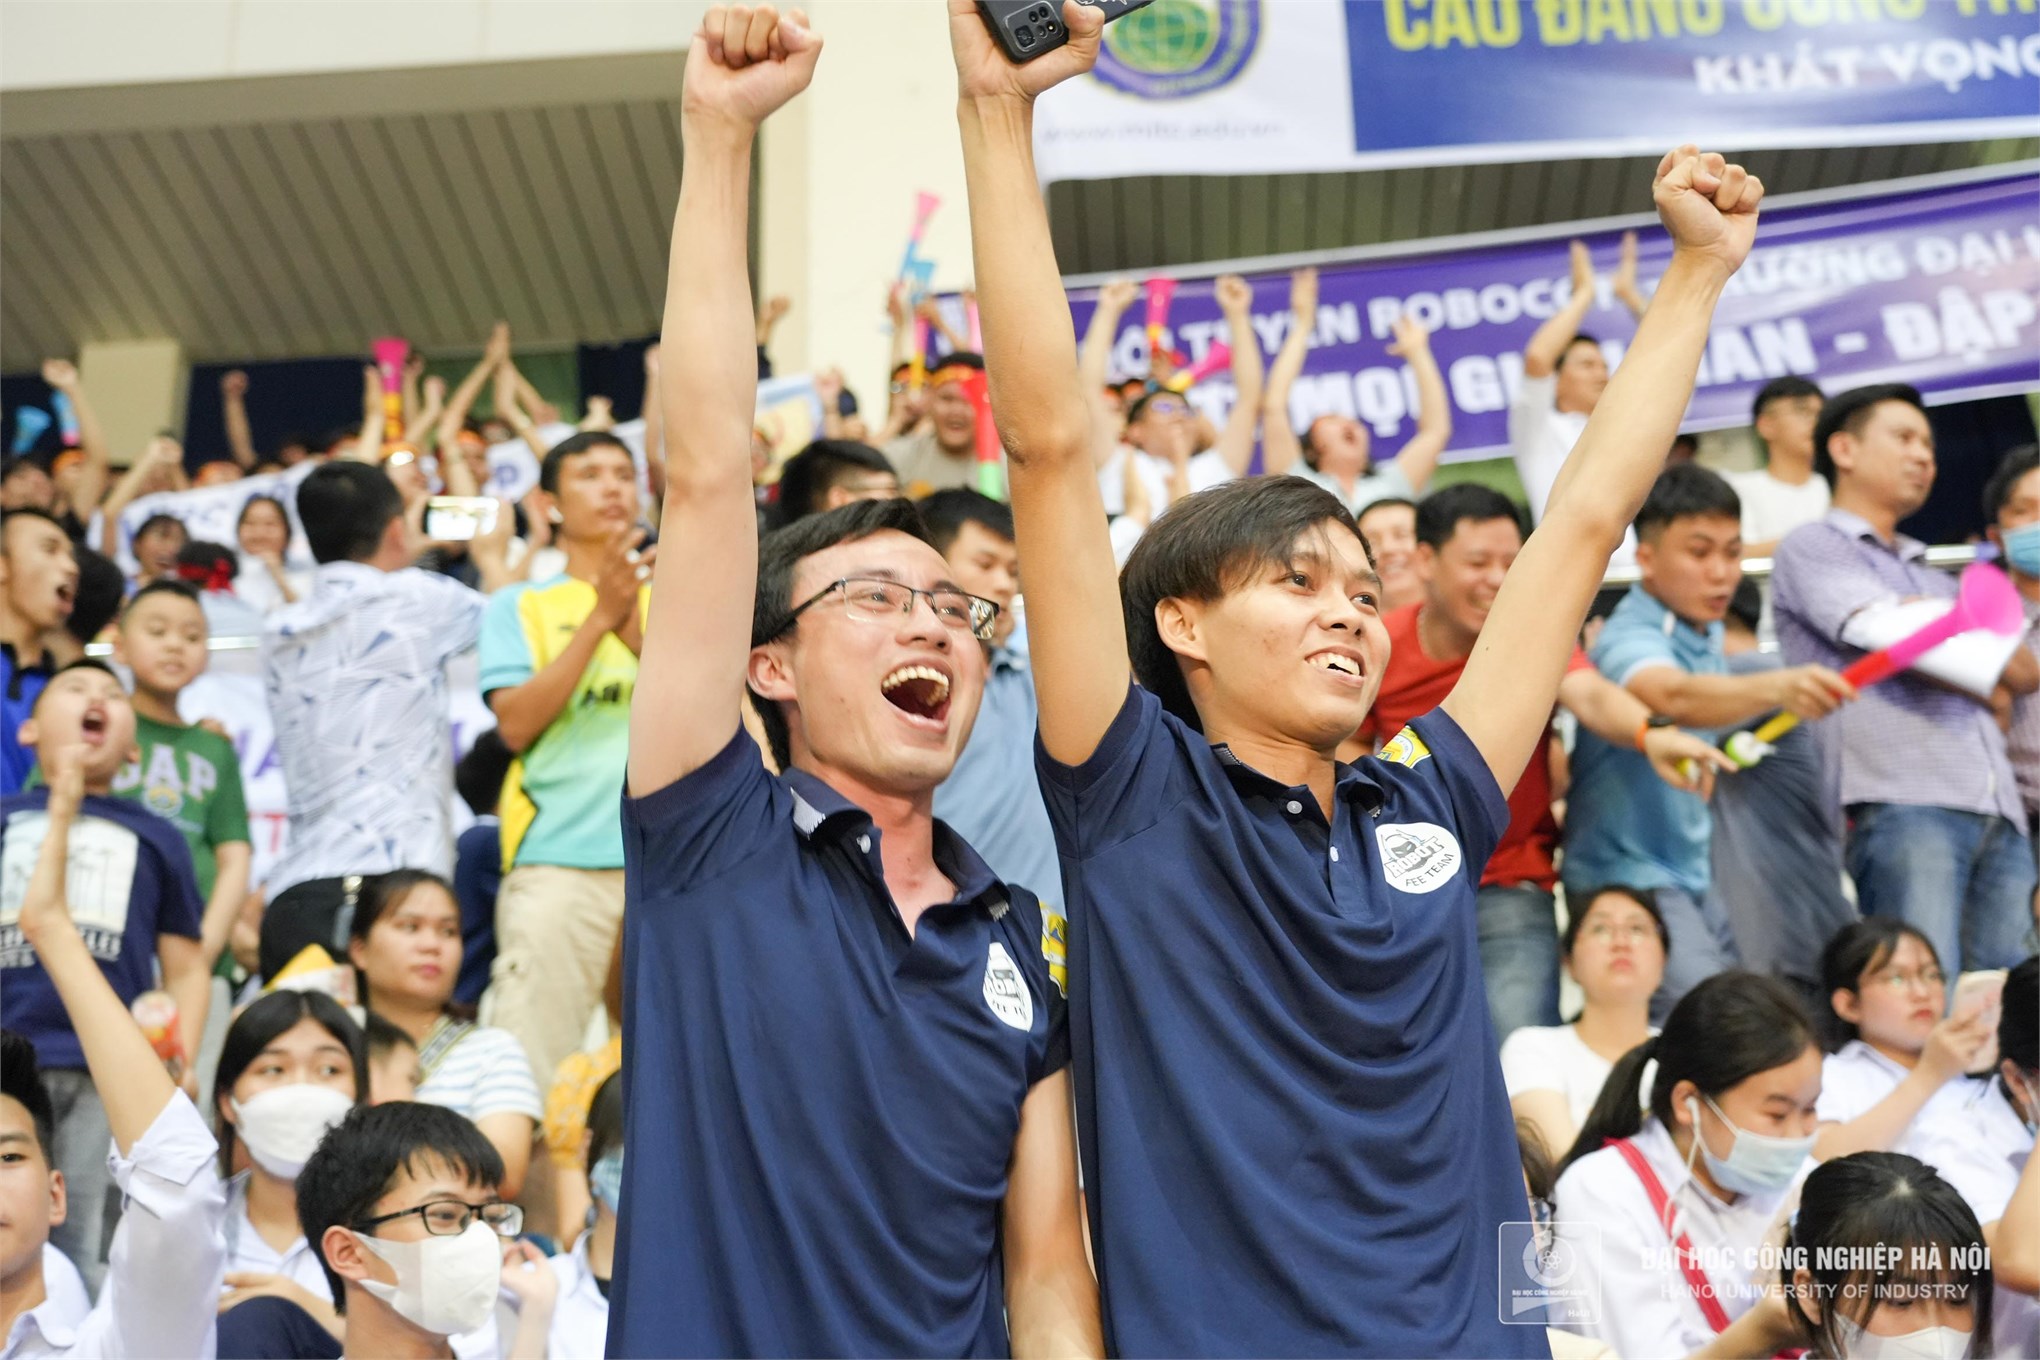 03 Chiến thắng Chey – yo tại vòng chung kết Robocon – Nhà vô địch Robocon 2023 gọi tên ĐT02, Đại học Công nghiệp Hà Nội !!!!